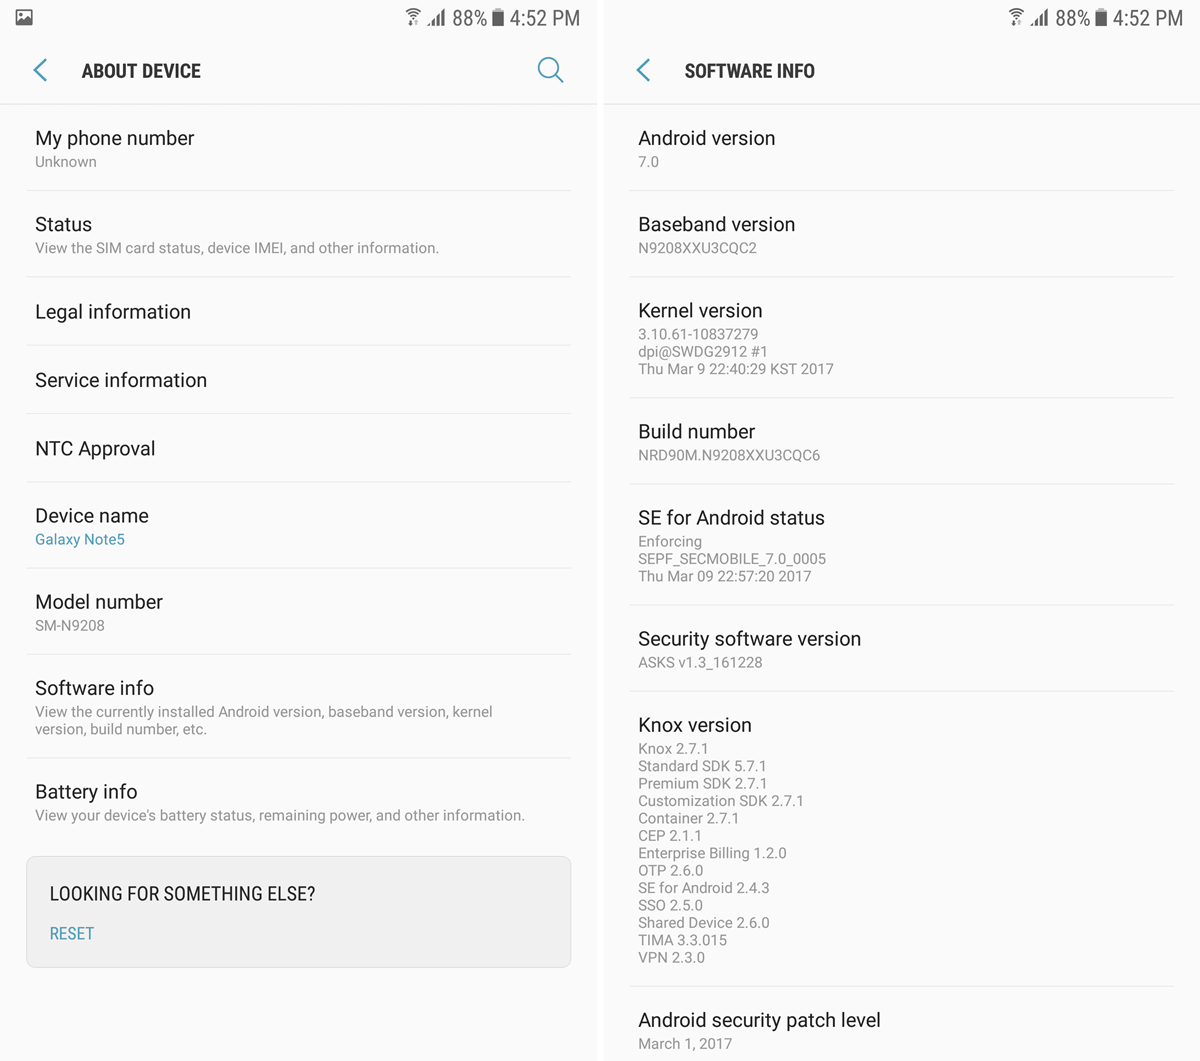 Galaxy Note 5 Dual SIM (SM-N9208) ahora recibe la actualización de Android 7.0 Nougat